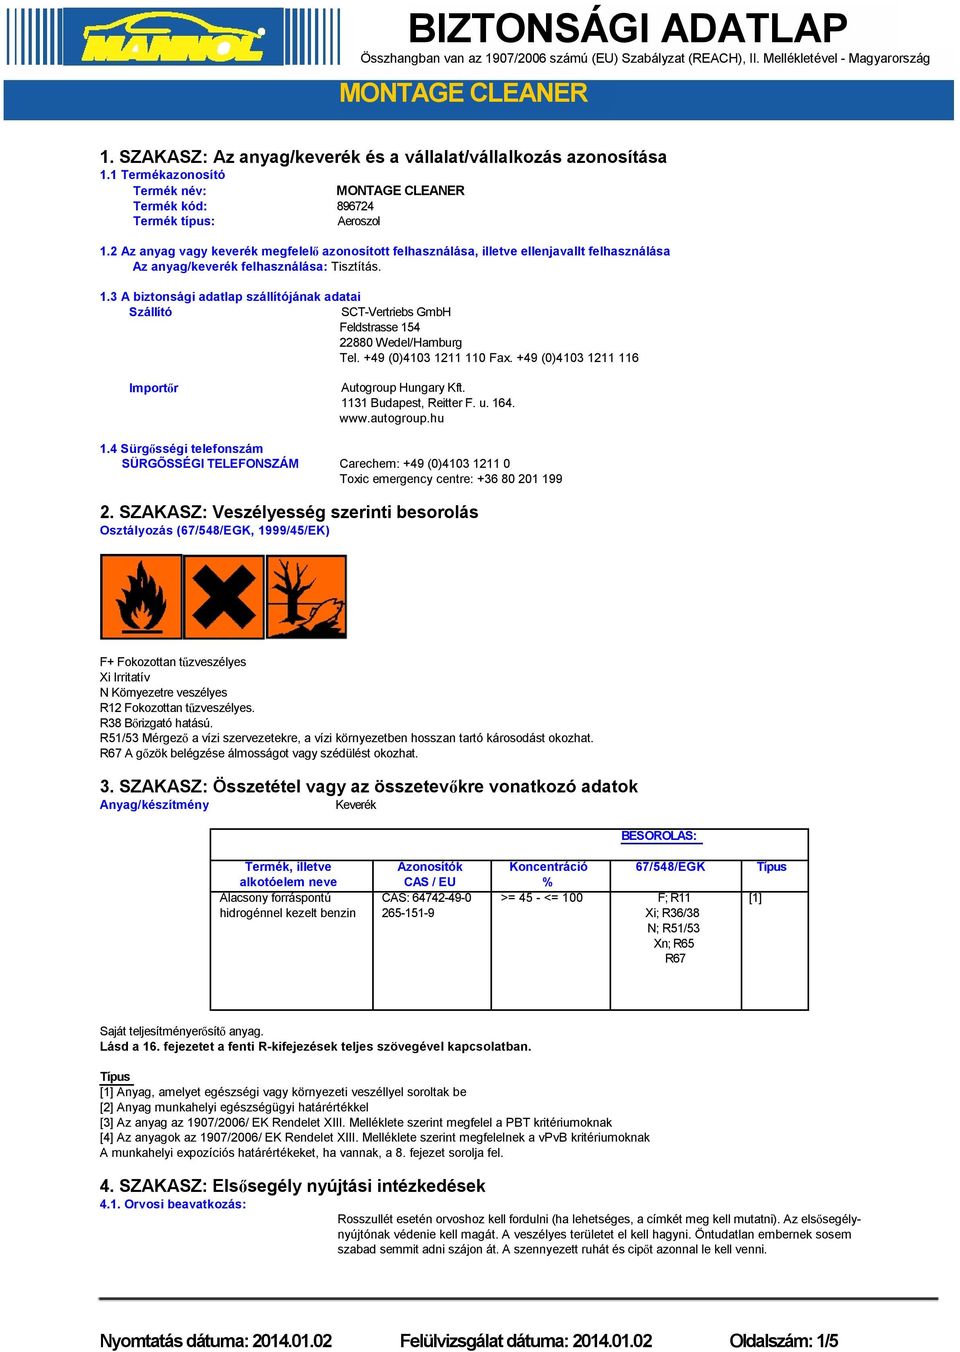 3 A biztonsági adatlap szállítójának adatai Szállító SCT-Vertriebs GmbH Feldstrasse 154 22880 Wedel/Hamburg Tel. +49 (0)4103 1211 110 Fax. +49 (0)4103 1211 116 Importőr 1.